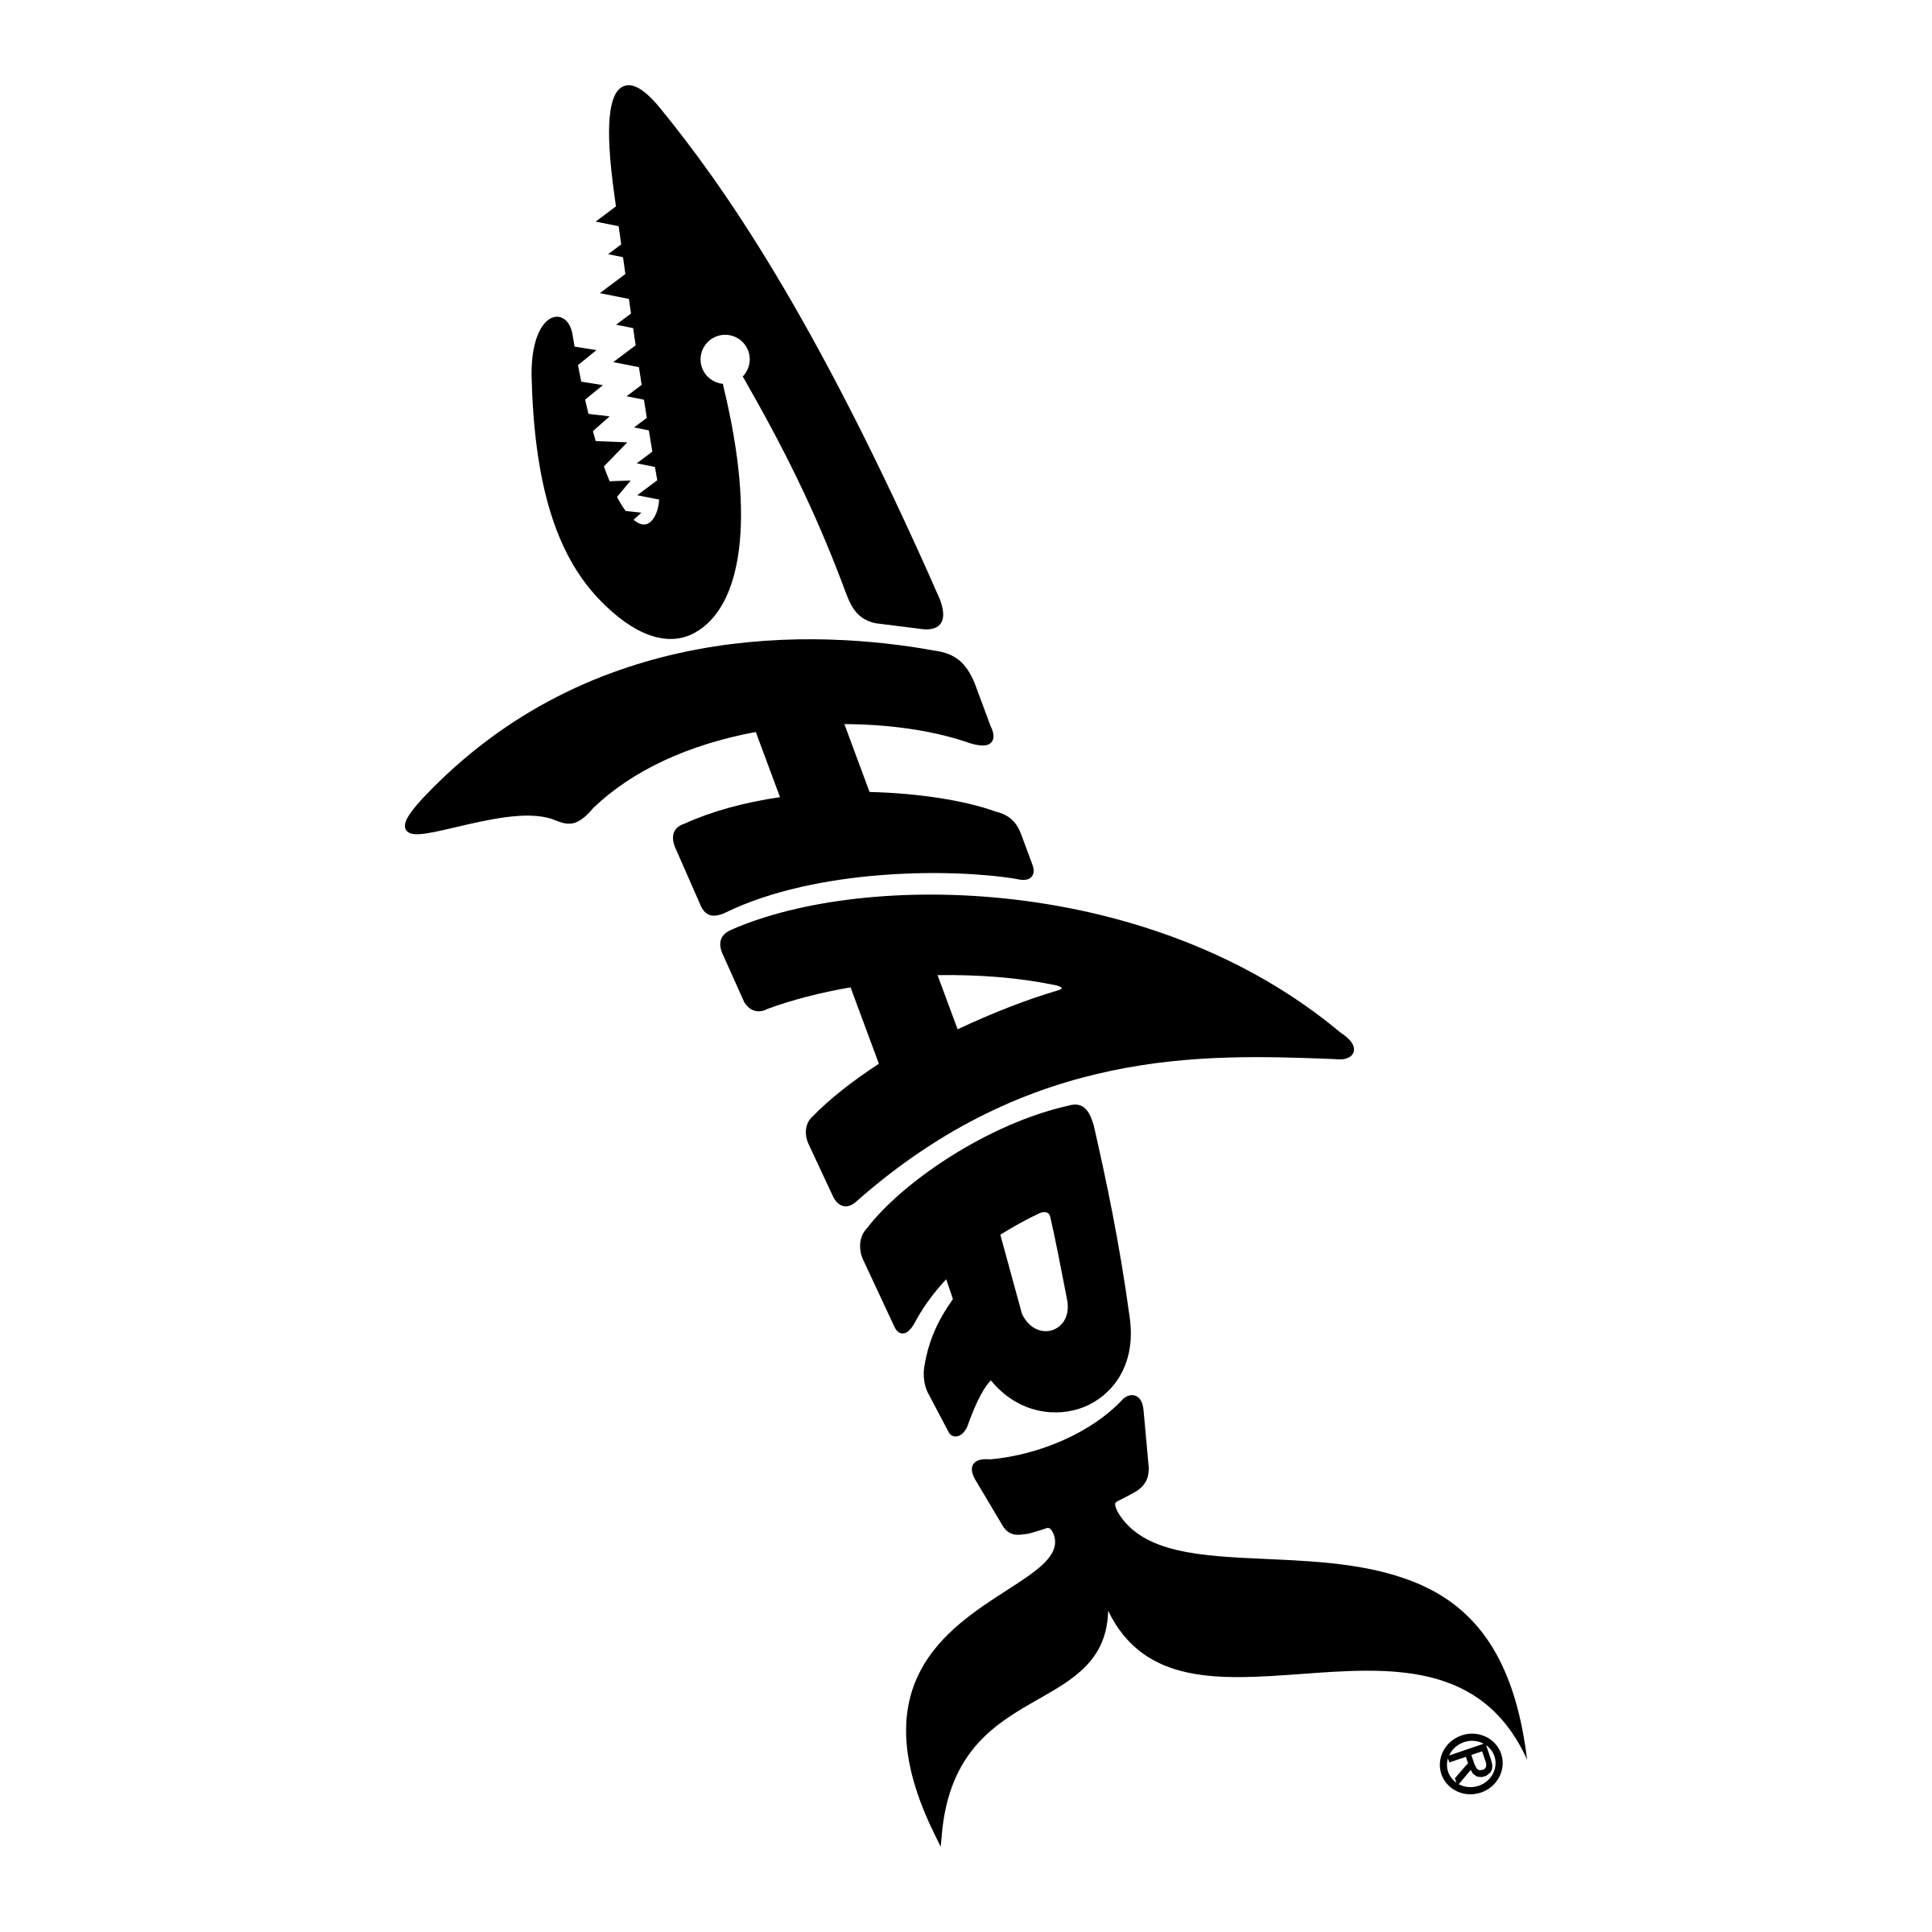 Shark Logo - LogoDix